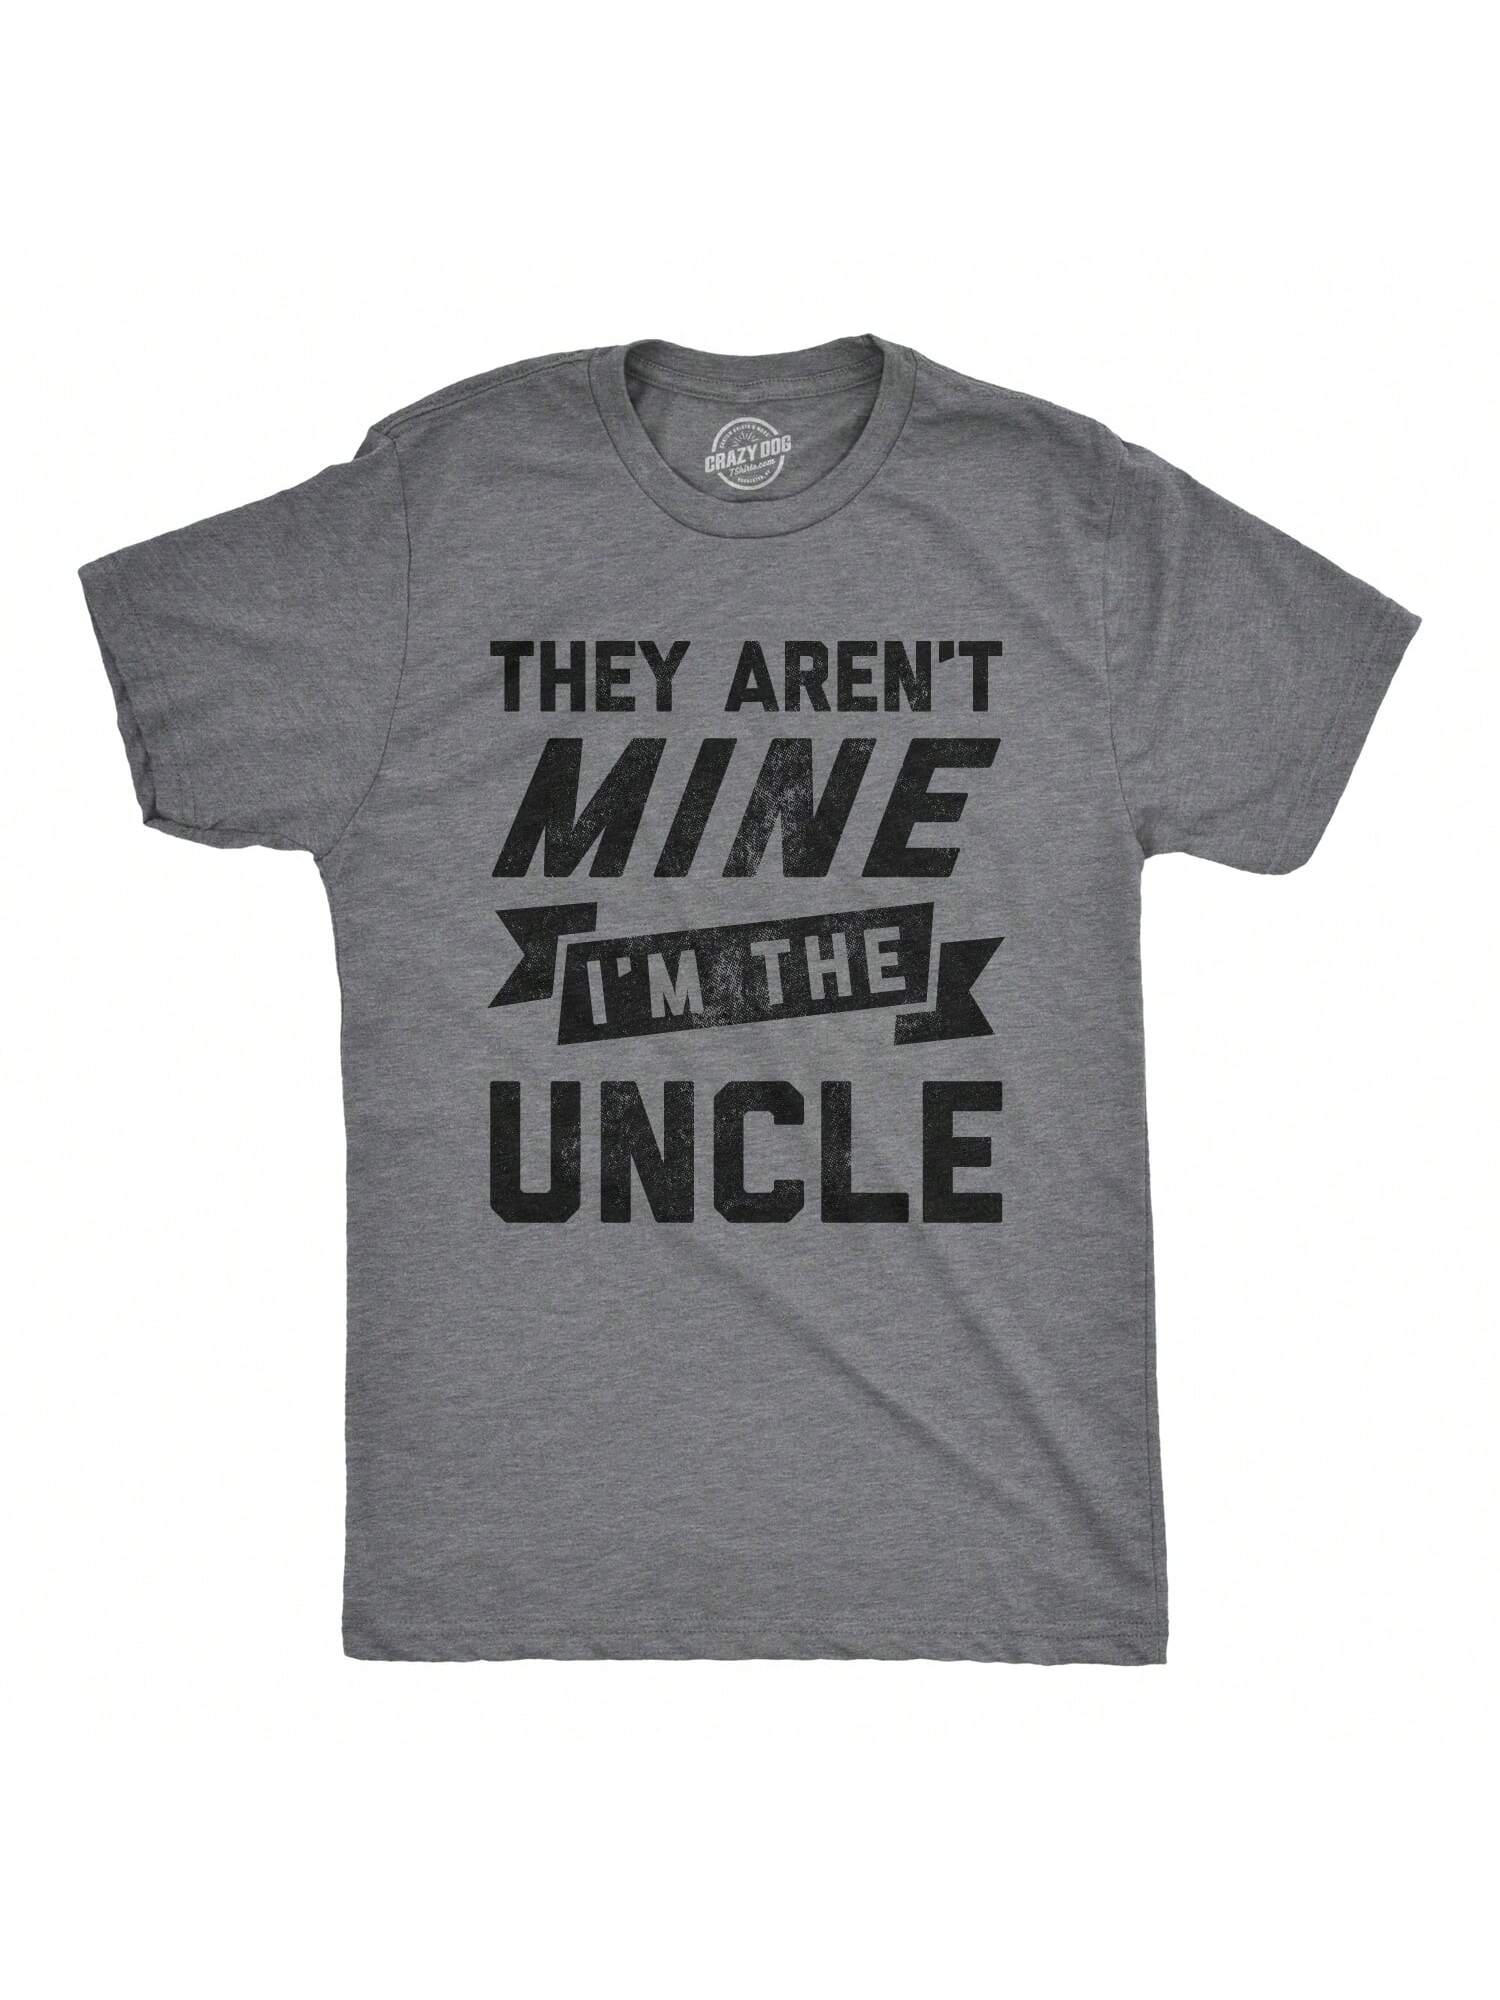 Мужская футболка «Они не мои» «Я дядя», темный хизер грей - они не мои